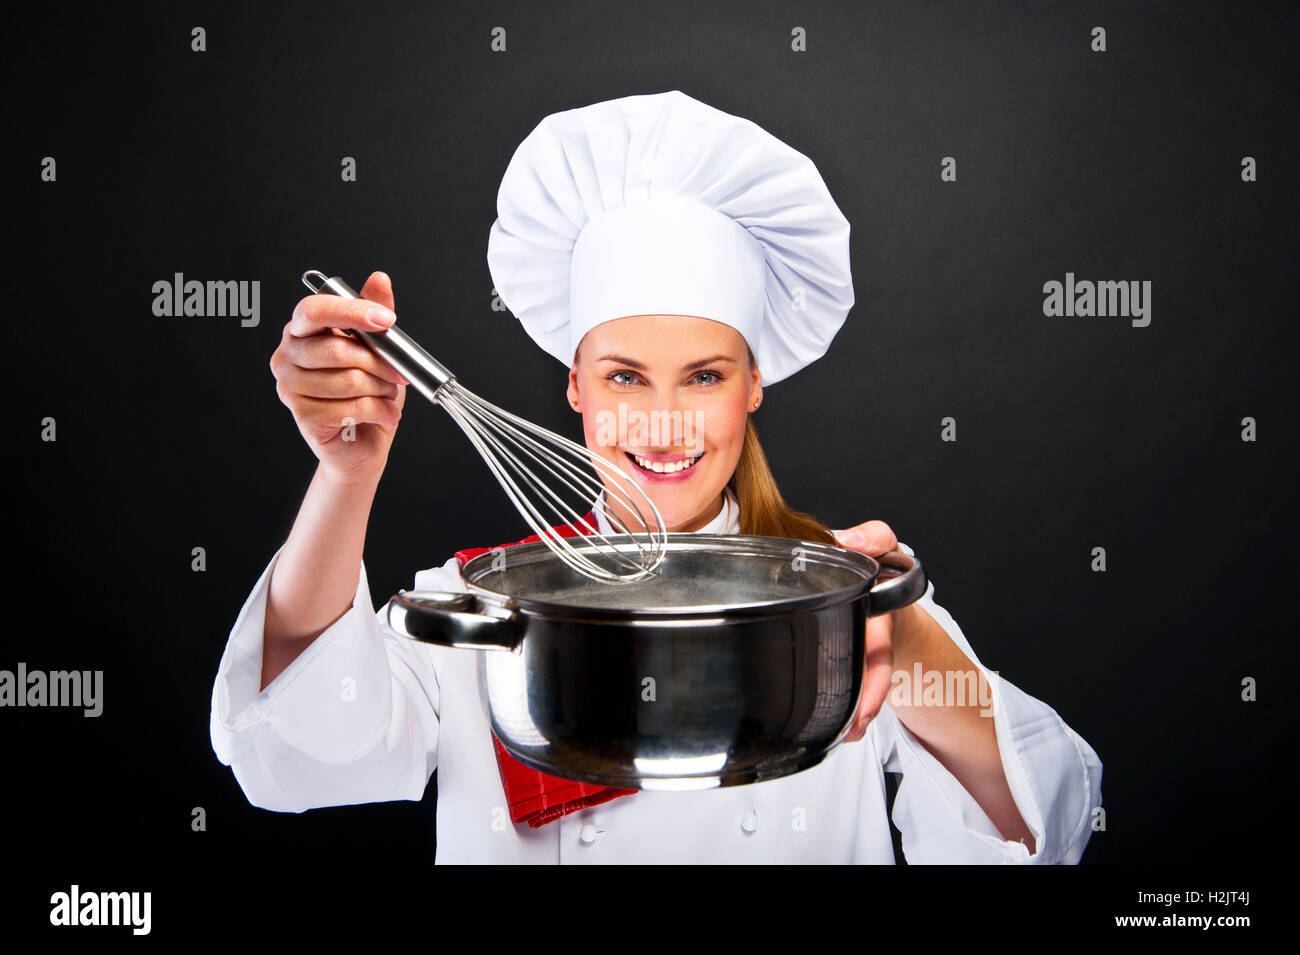 Kochen und Essen-Konzept - lächelnden Köchin mit Topf und andere tools  Stockfotografie - Alamy